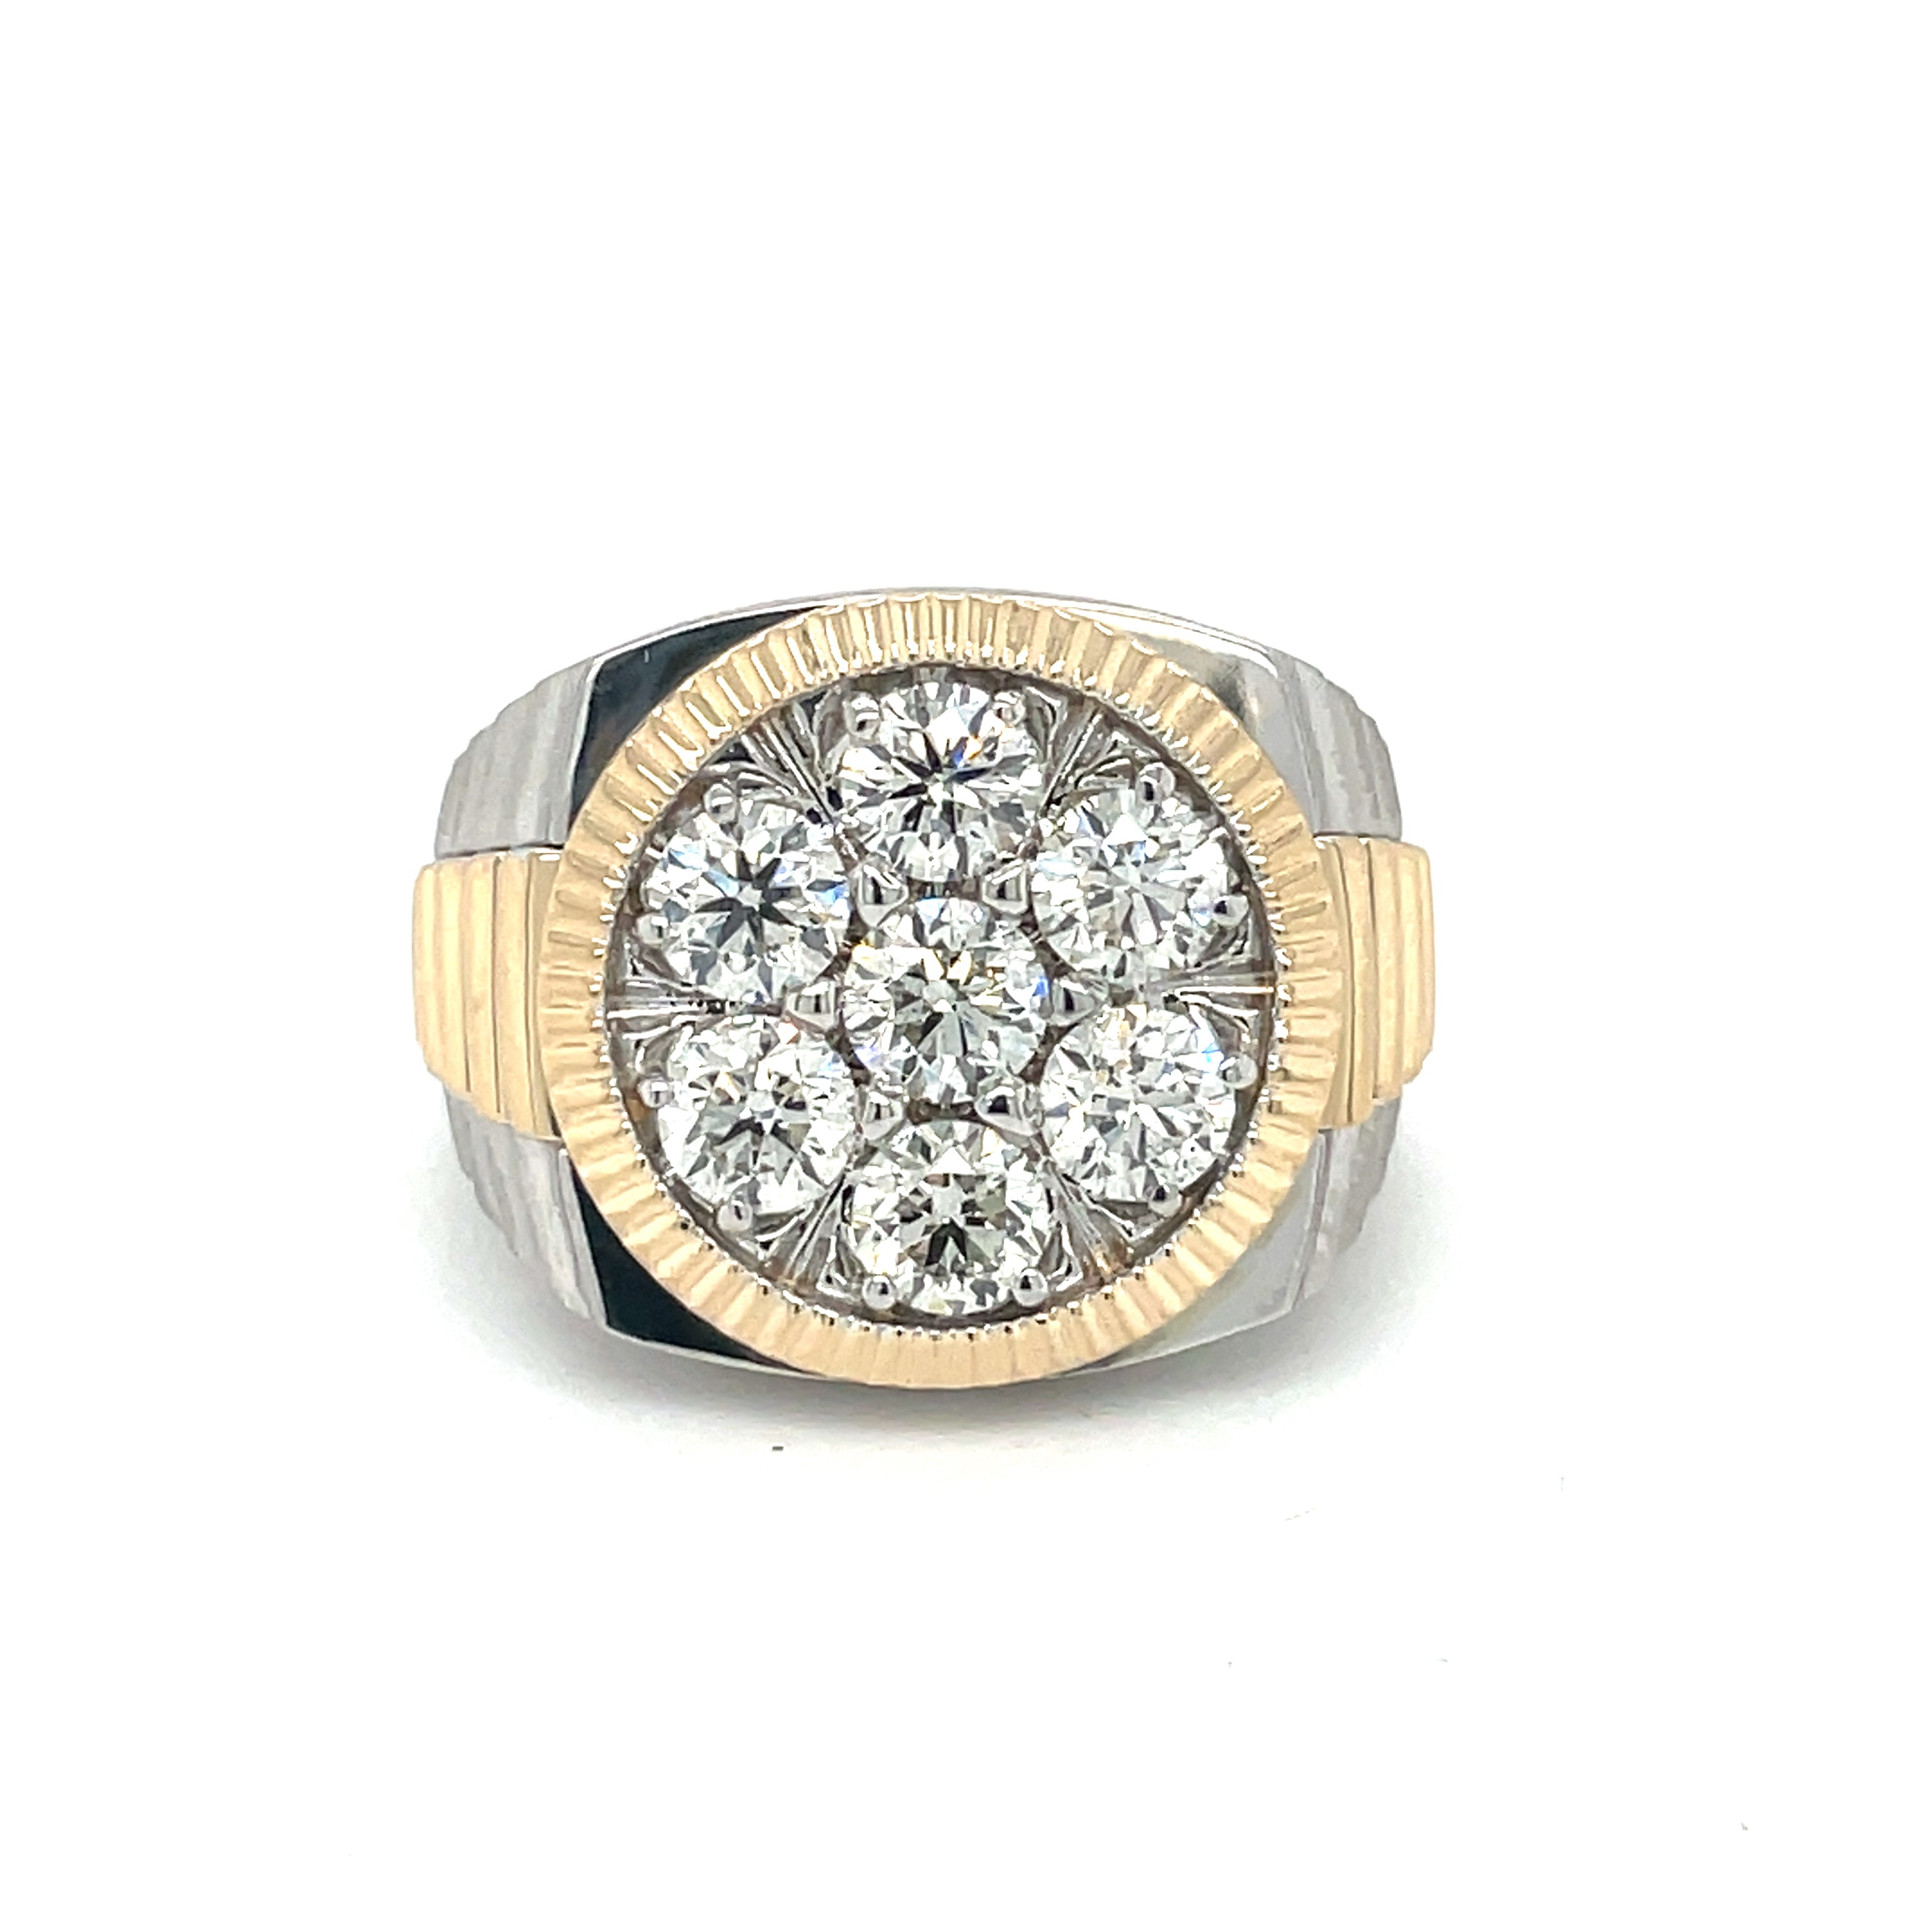 10k Gold Rolex Ring Men, Two Toned Rings, Baguette Diamonds | eBay